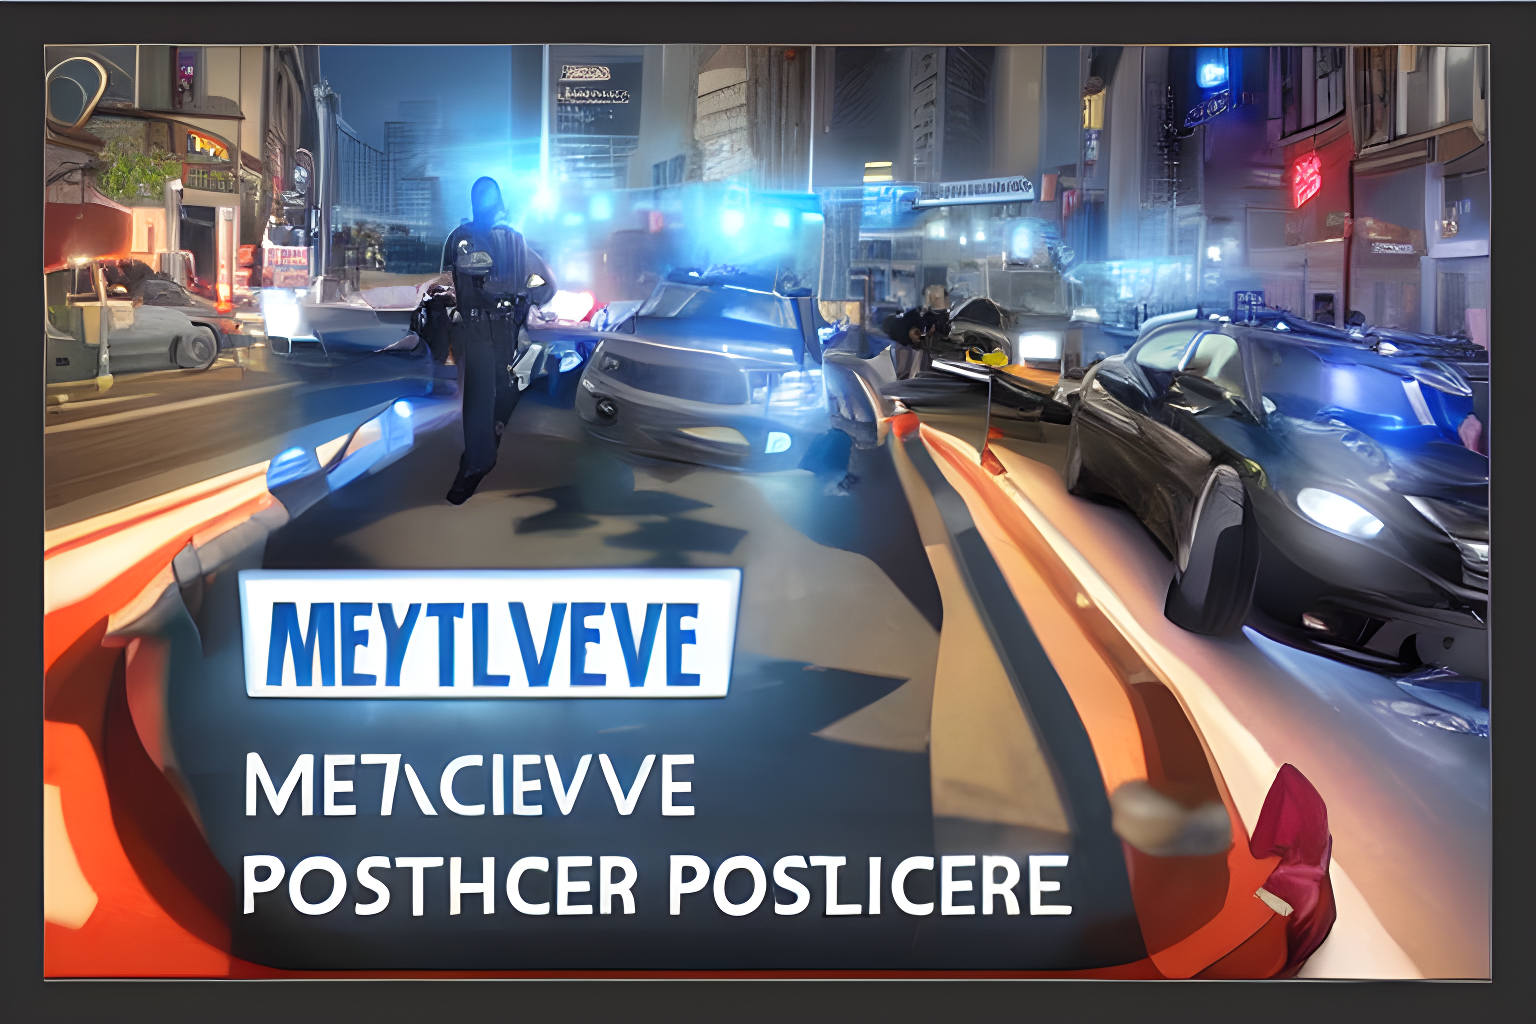 metaverse police